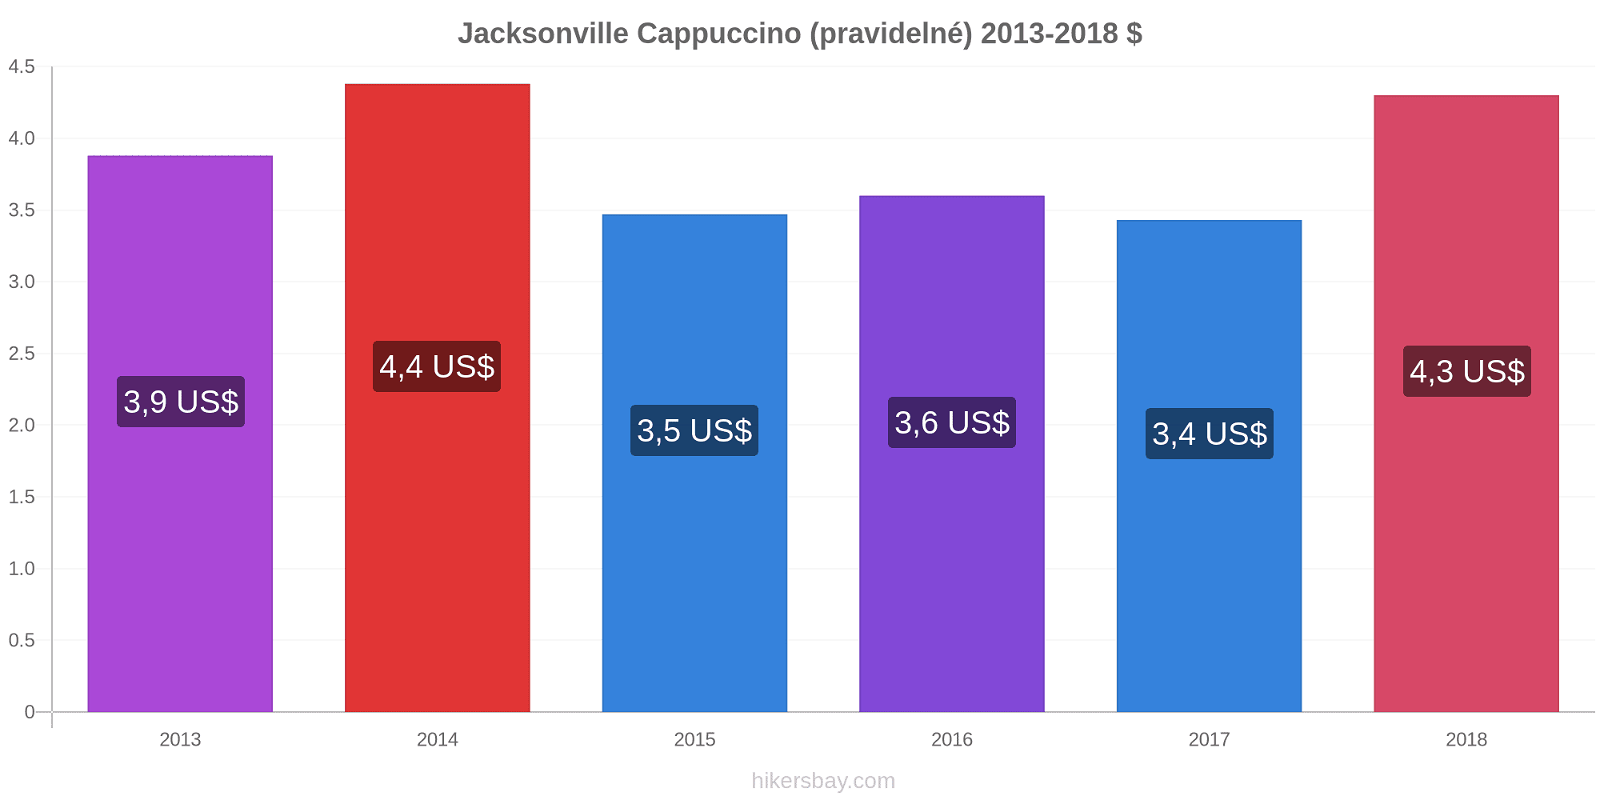 Jacksonville změny cen Cappuccino (pravidelné) hikersbay.com